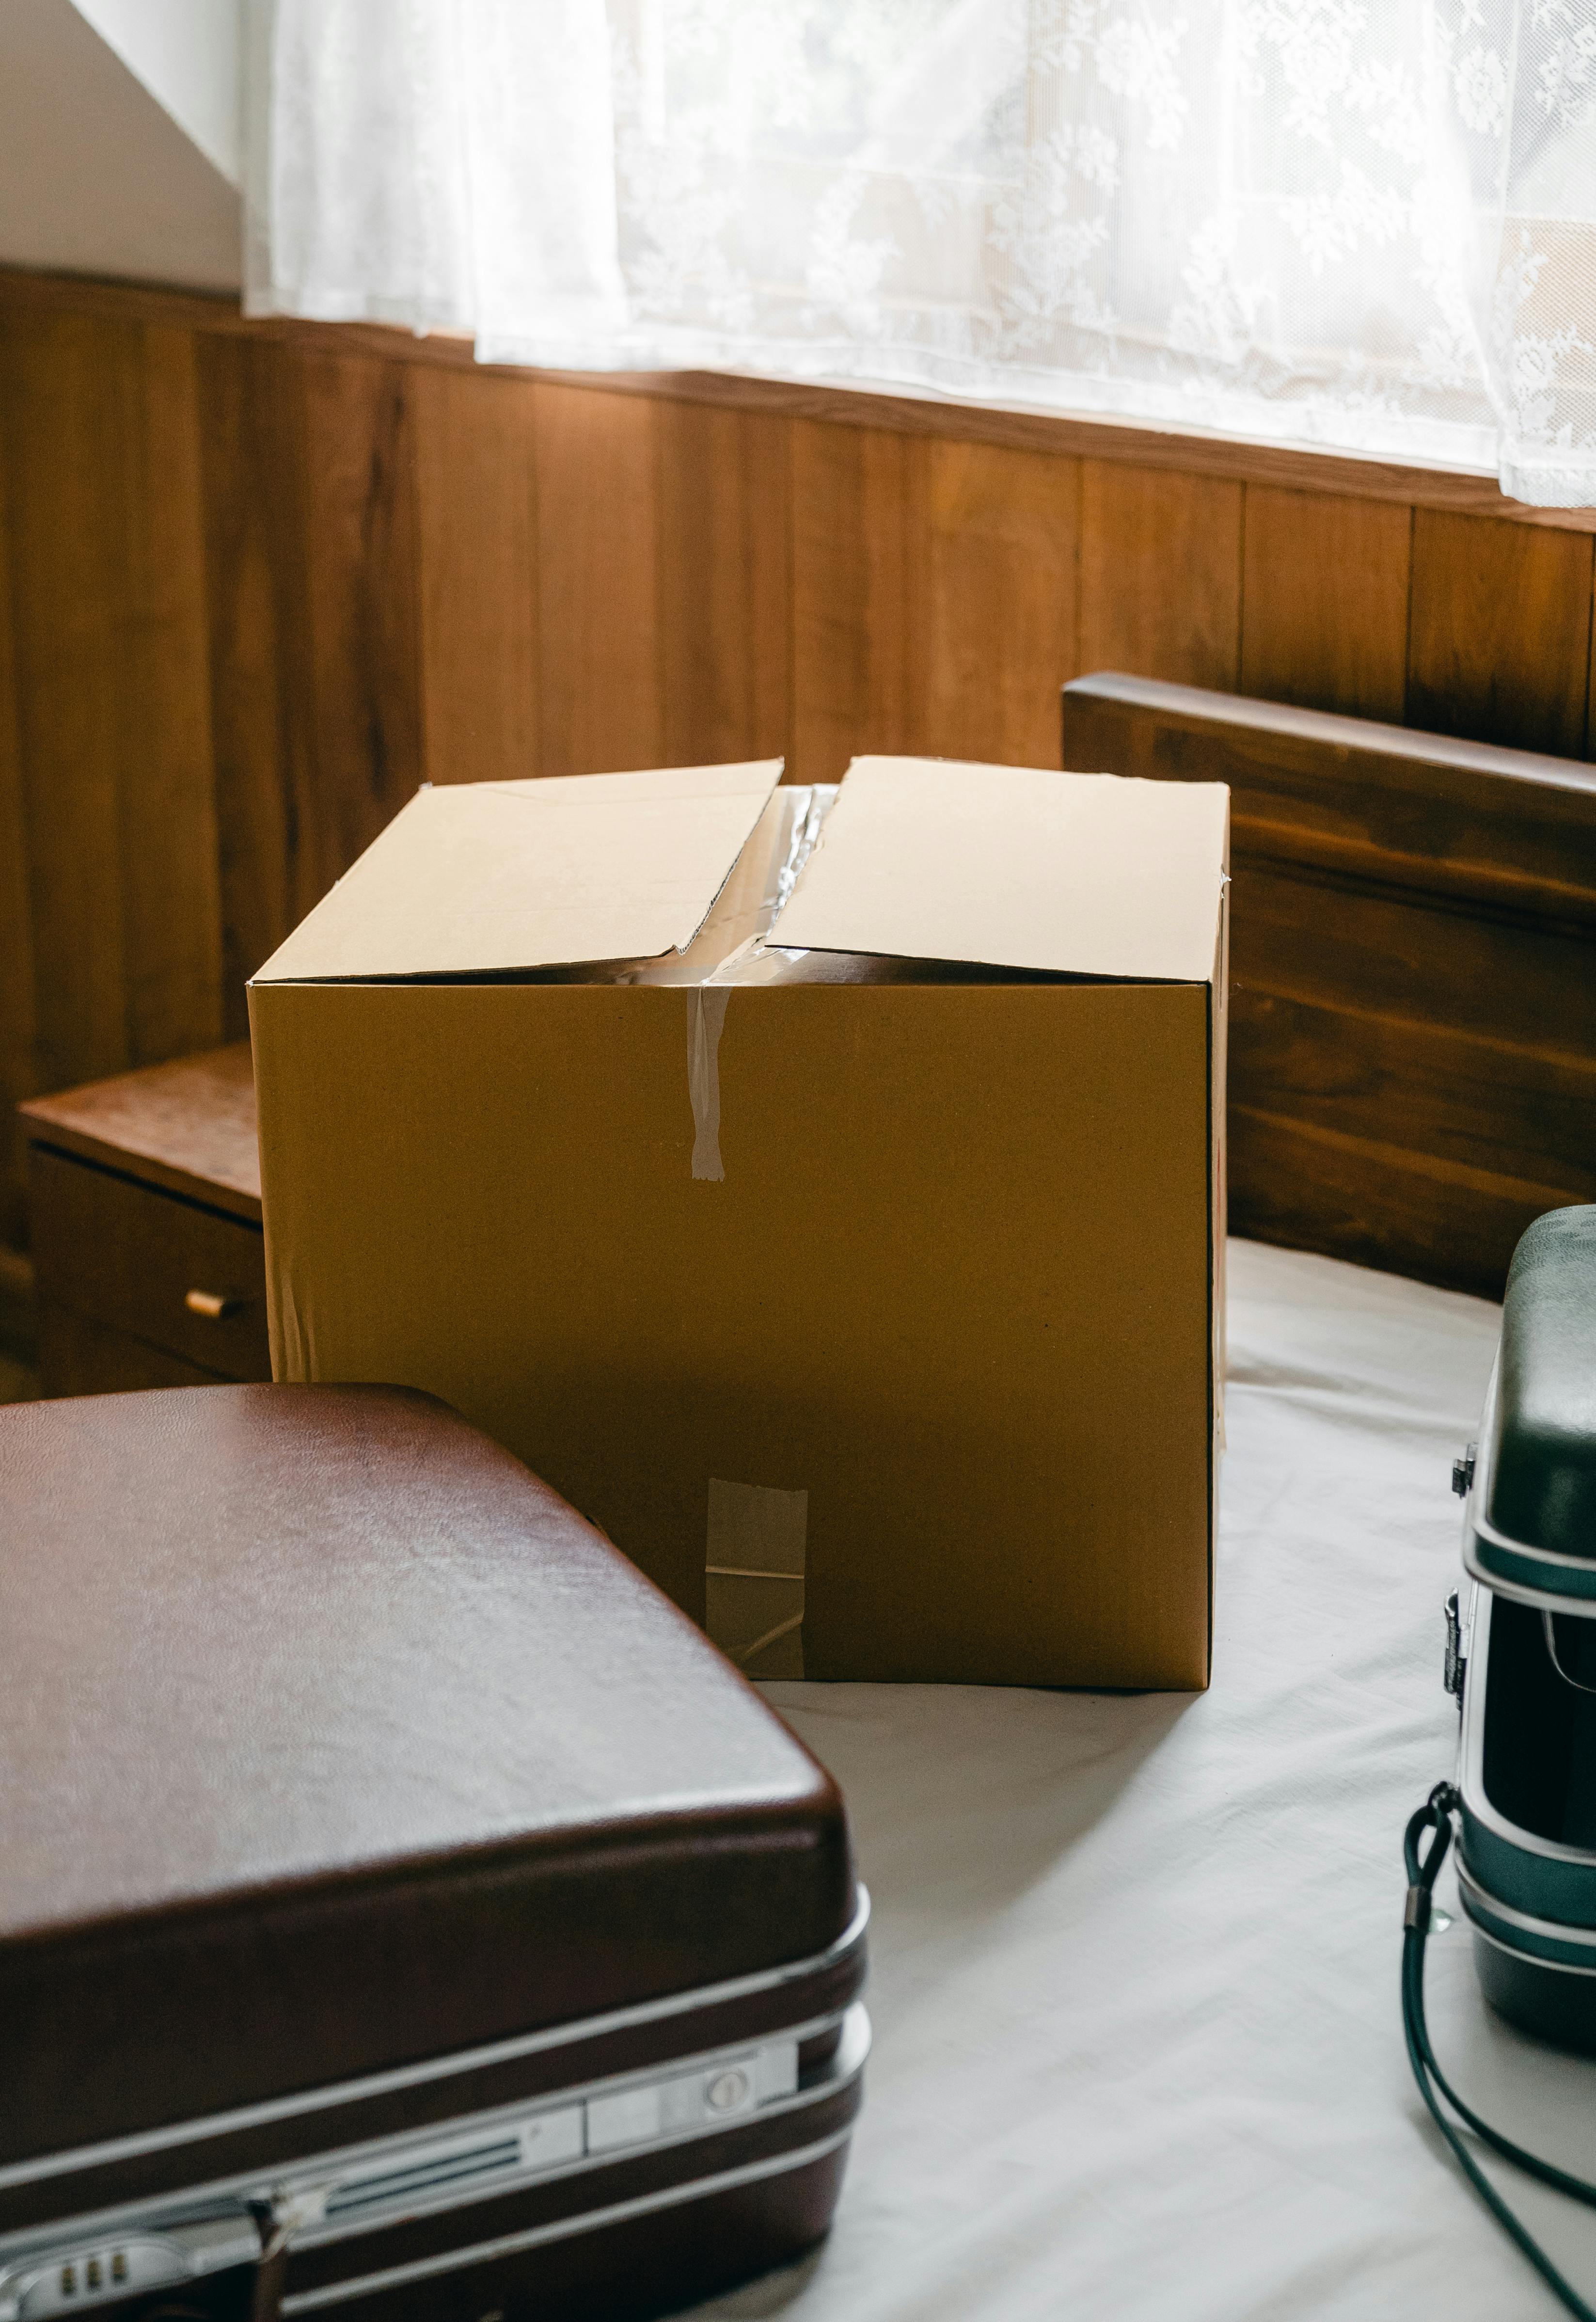 Una caja y una maleta viejas | Fuente: Pexels